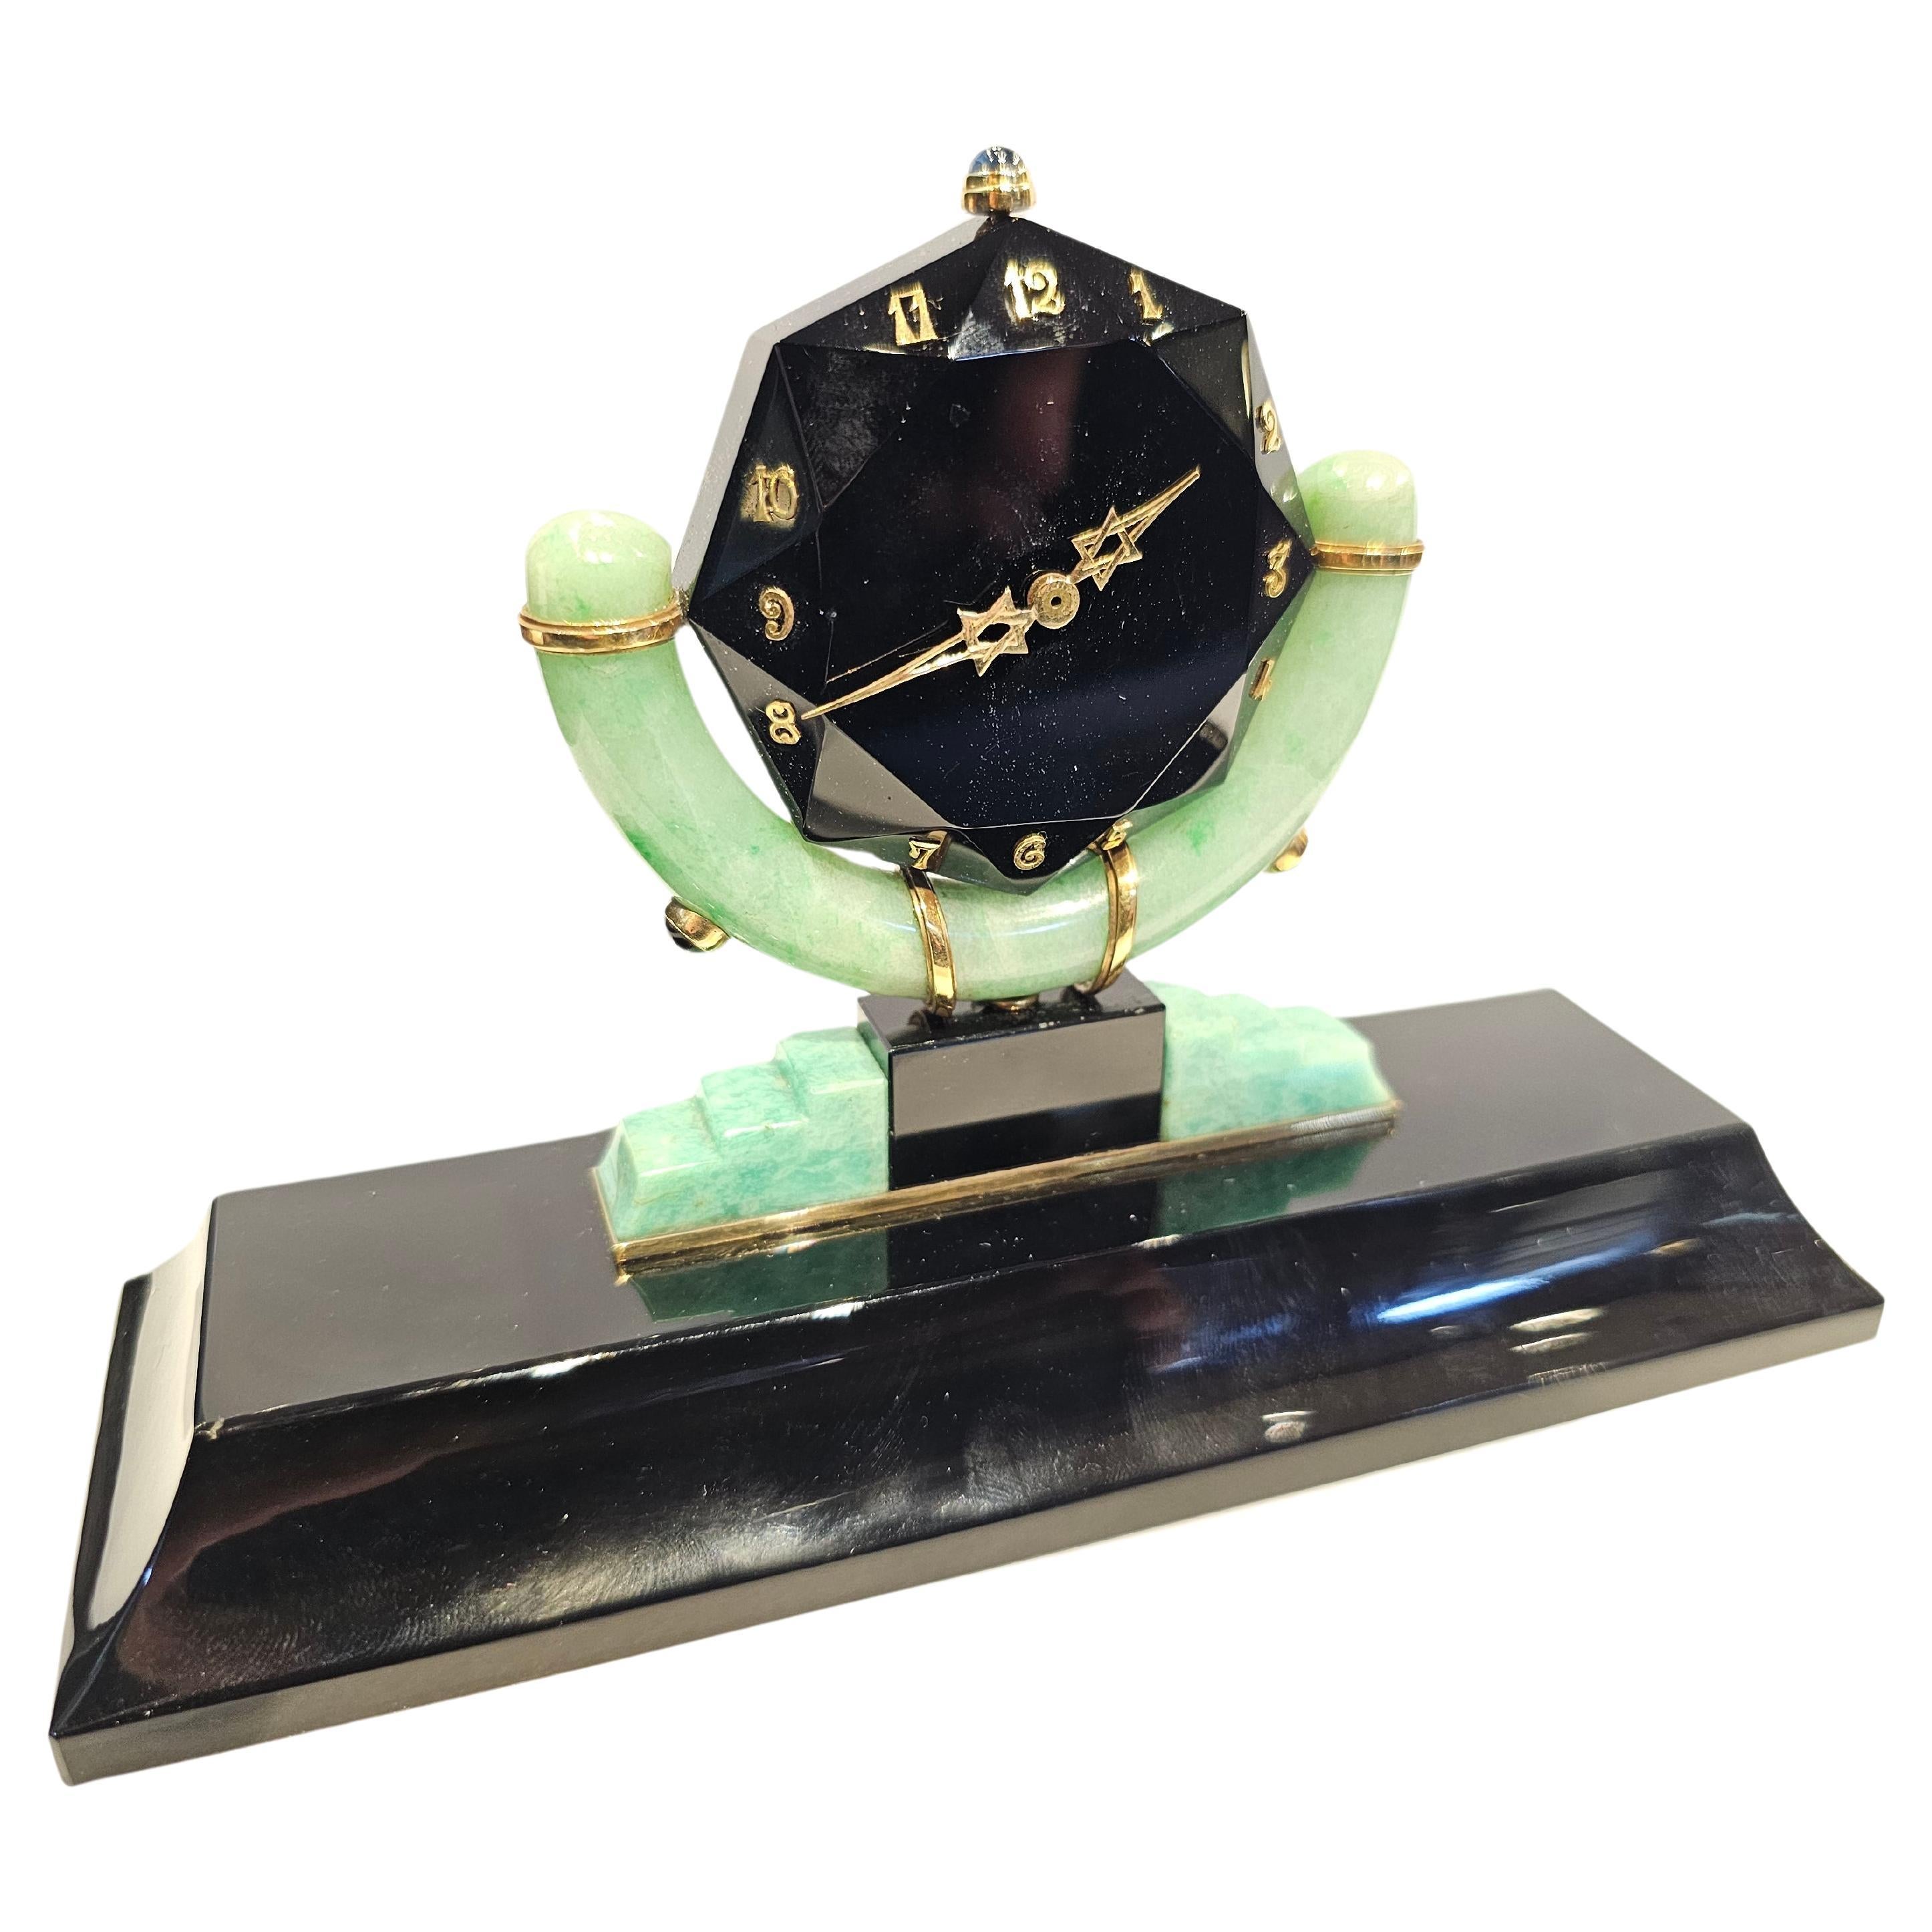 Art-déco-Schreibtischuhr von Rene Boivin aus Onyx, Jade und Amazonit

Diese äußerst seltene Uhr hat ein Zifferblatt aus Onyx mit goldenen Ziffern und Zeigern, die von einem Cabochon-Saphir gekrönt werden, der auf einem Onyx-Sockel steht, der mit